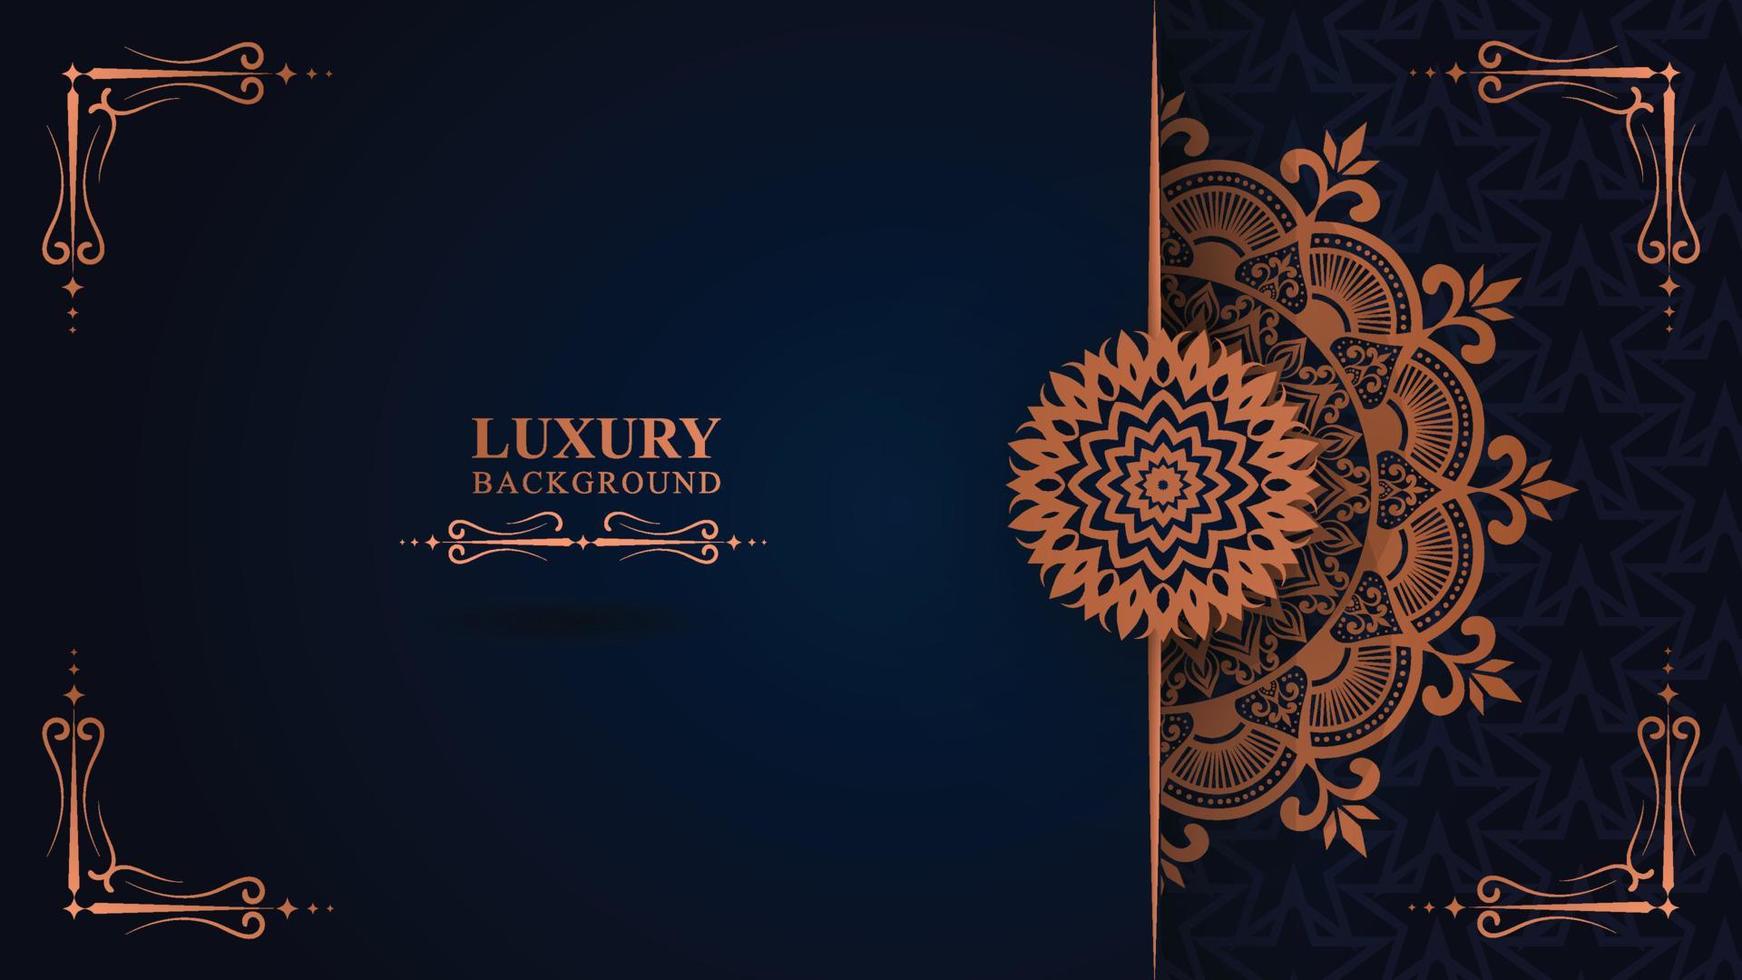 texture de motif floral de luxe et concept de mandala arabe traditionnel, utilisation pour la conception de bannières de ramadan islamique, carte de voeux de carte de visite. vecteur